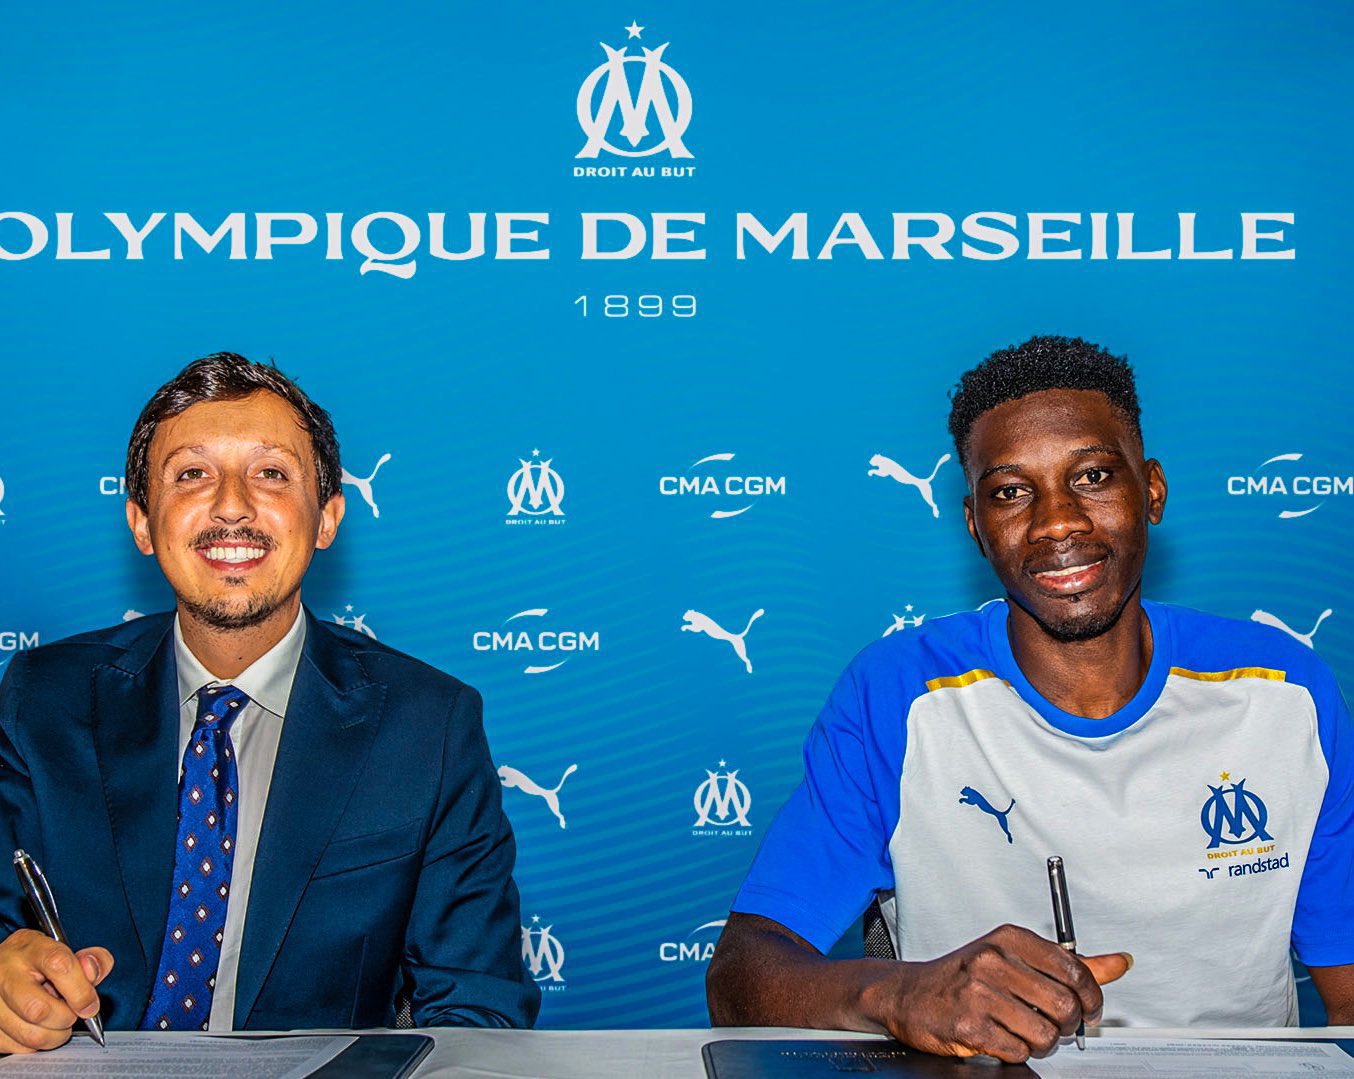 Les premiers mots d’Ismaïla Sarr, nouveau joueur de l’Olympique de Marseille